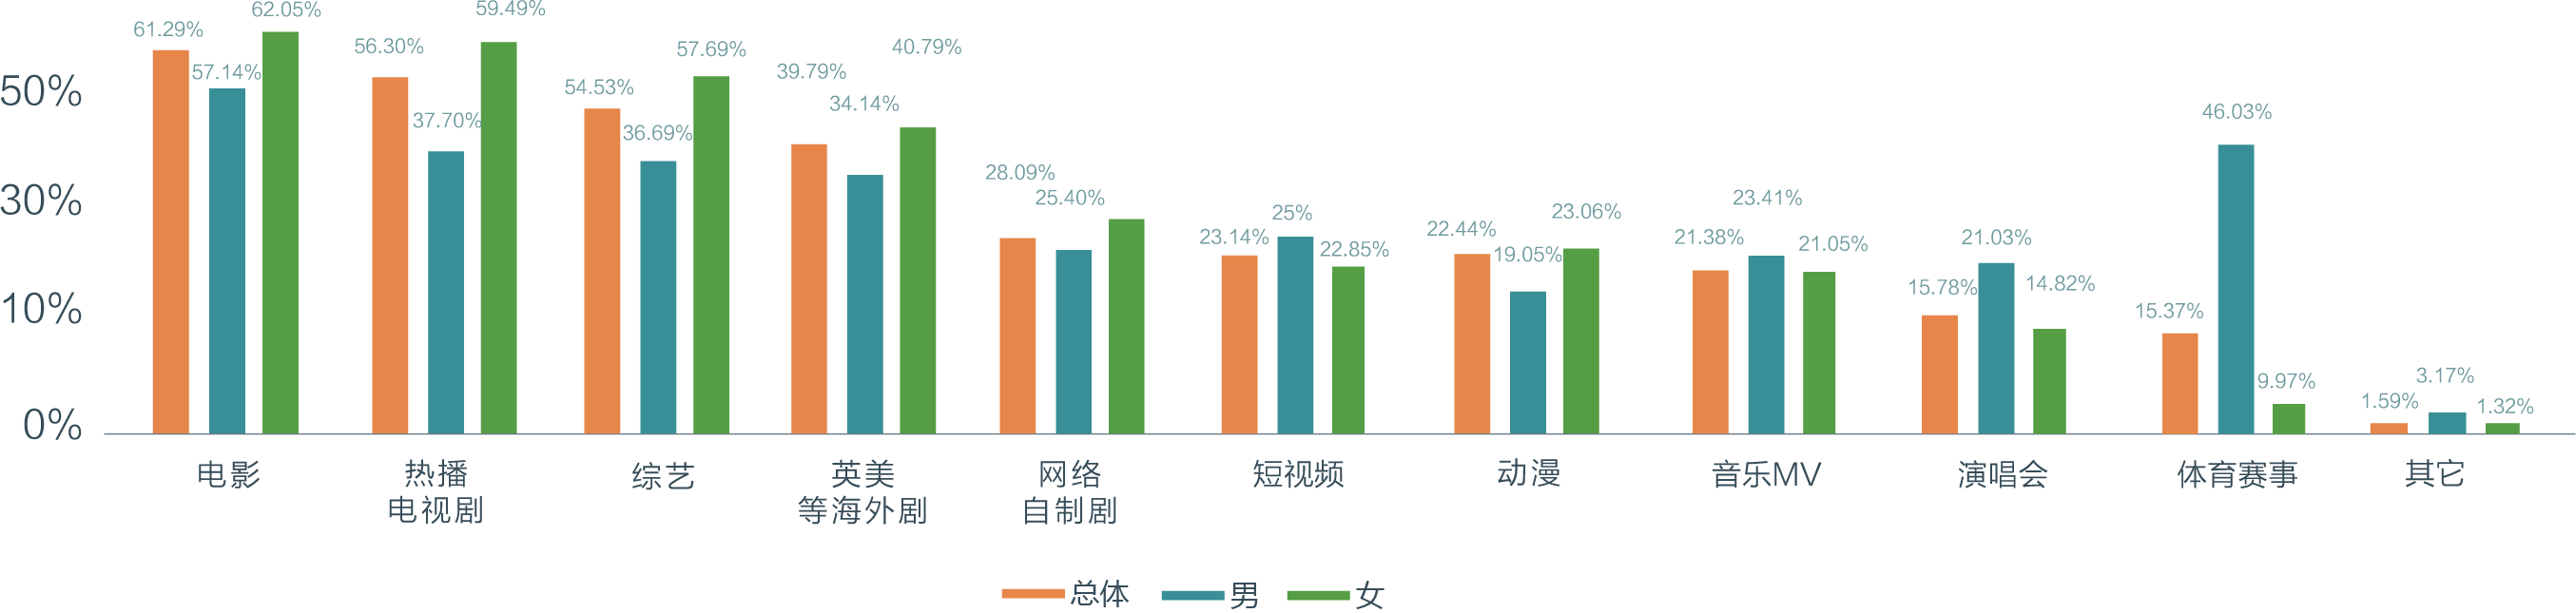 《2017影响中国家居生活方式趋势报告》联合发布